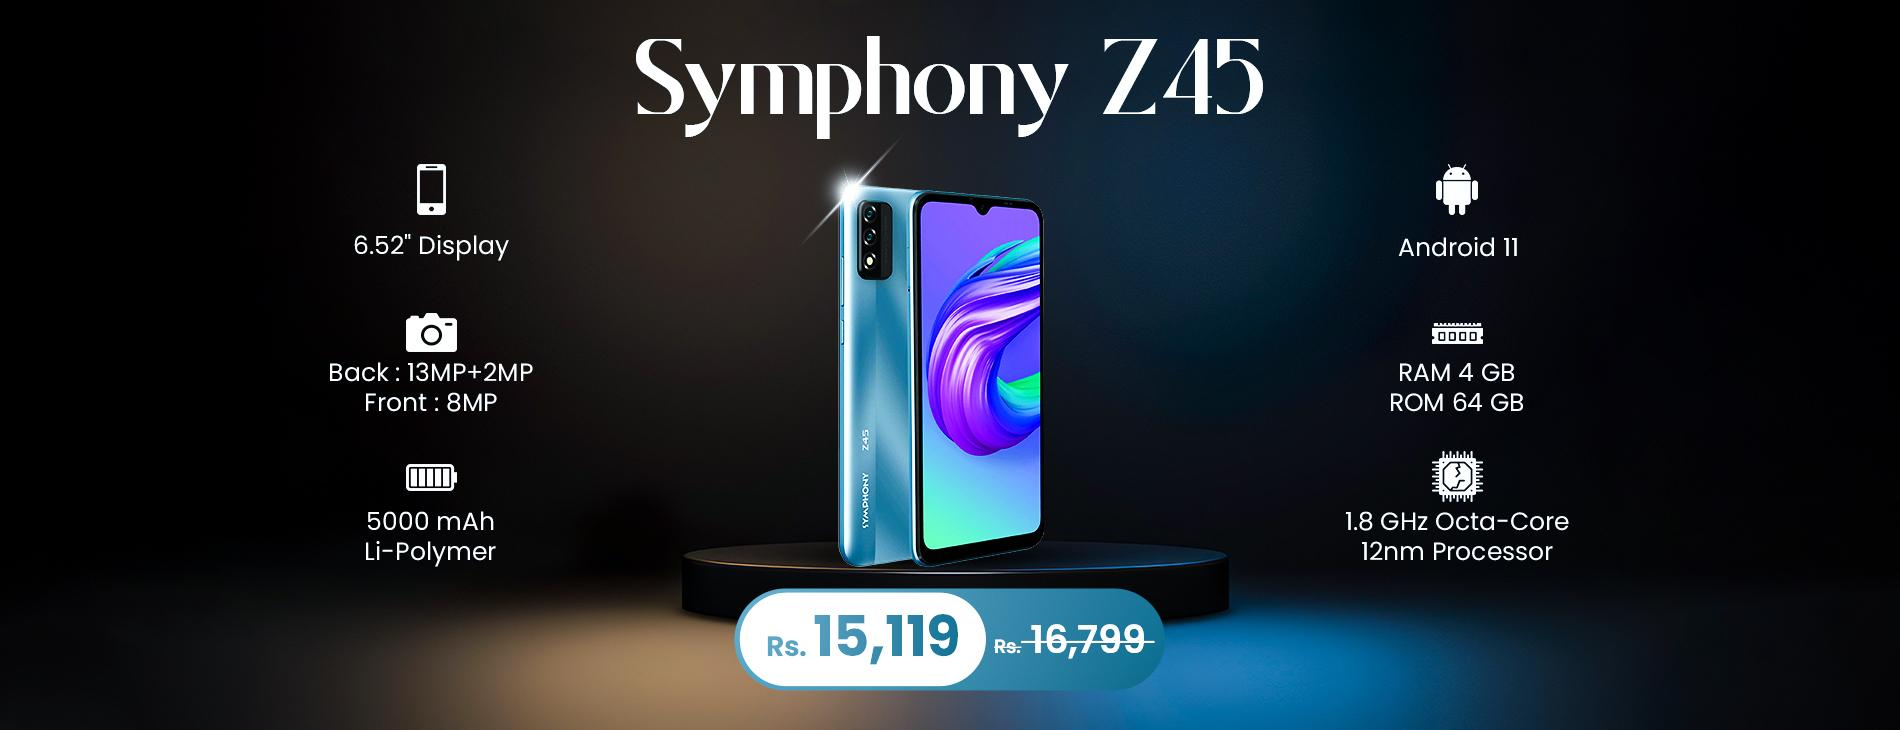 Symphony Z45 Smartphone